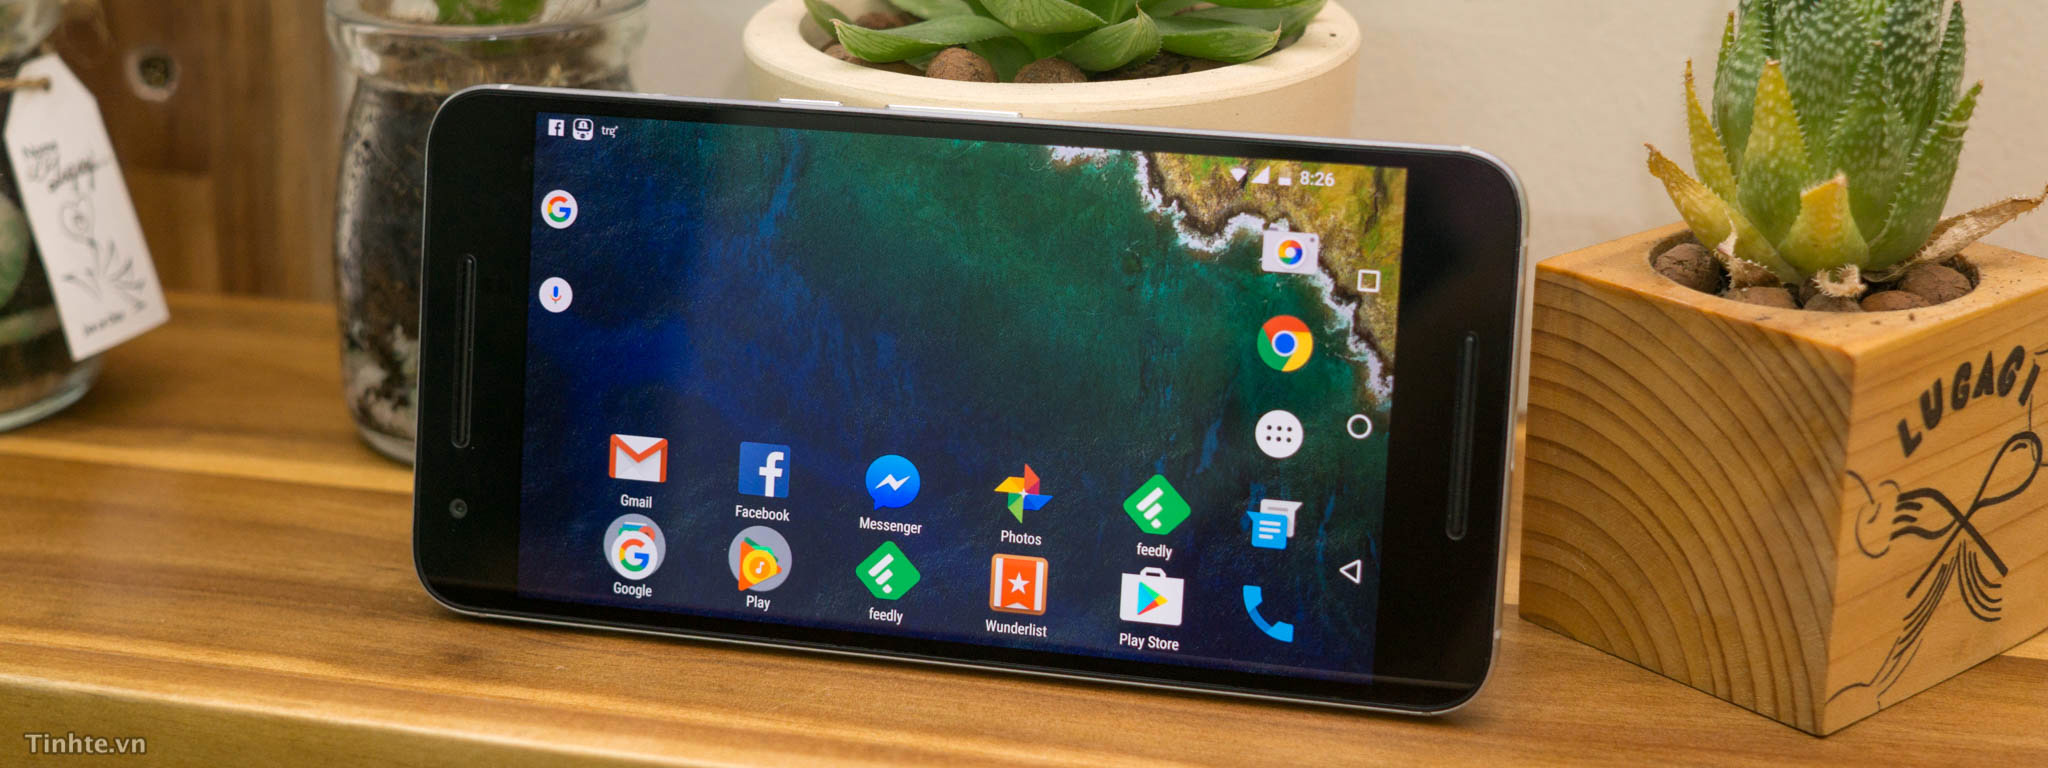 Google không muốn sạc nhanh độc quyền trên điện thoại Android